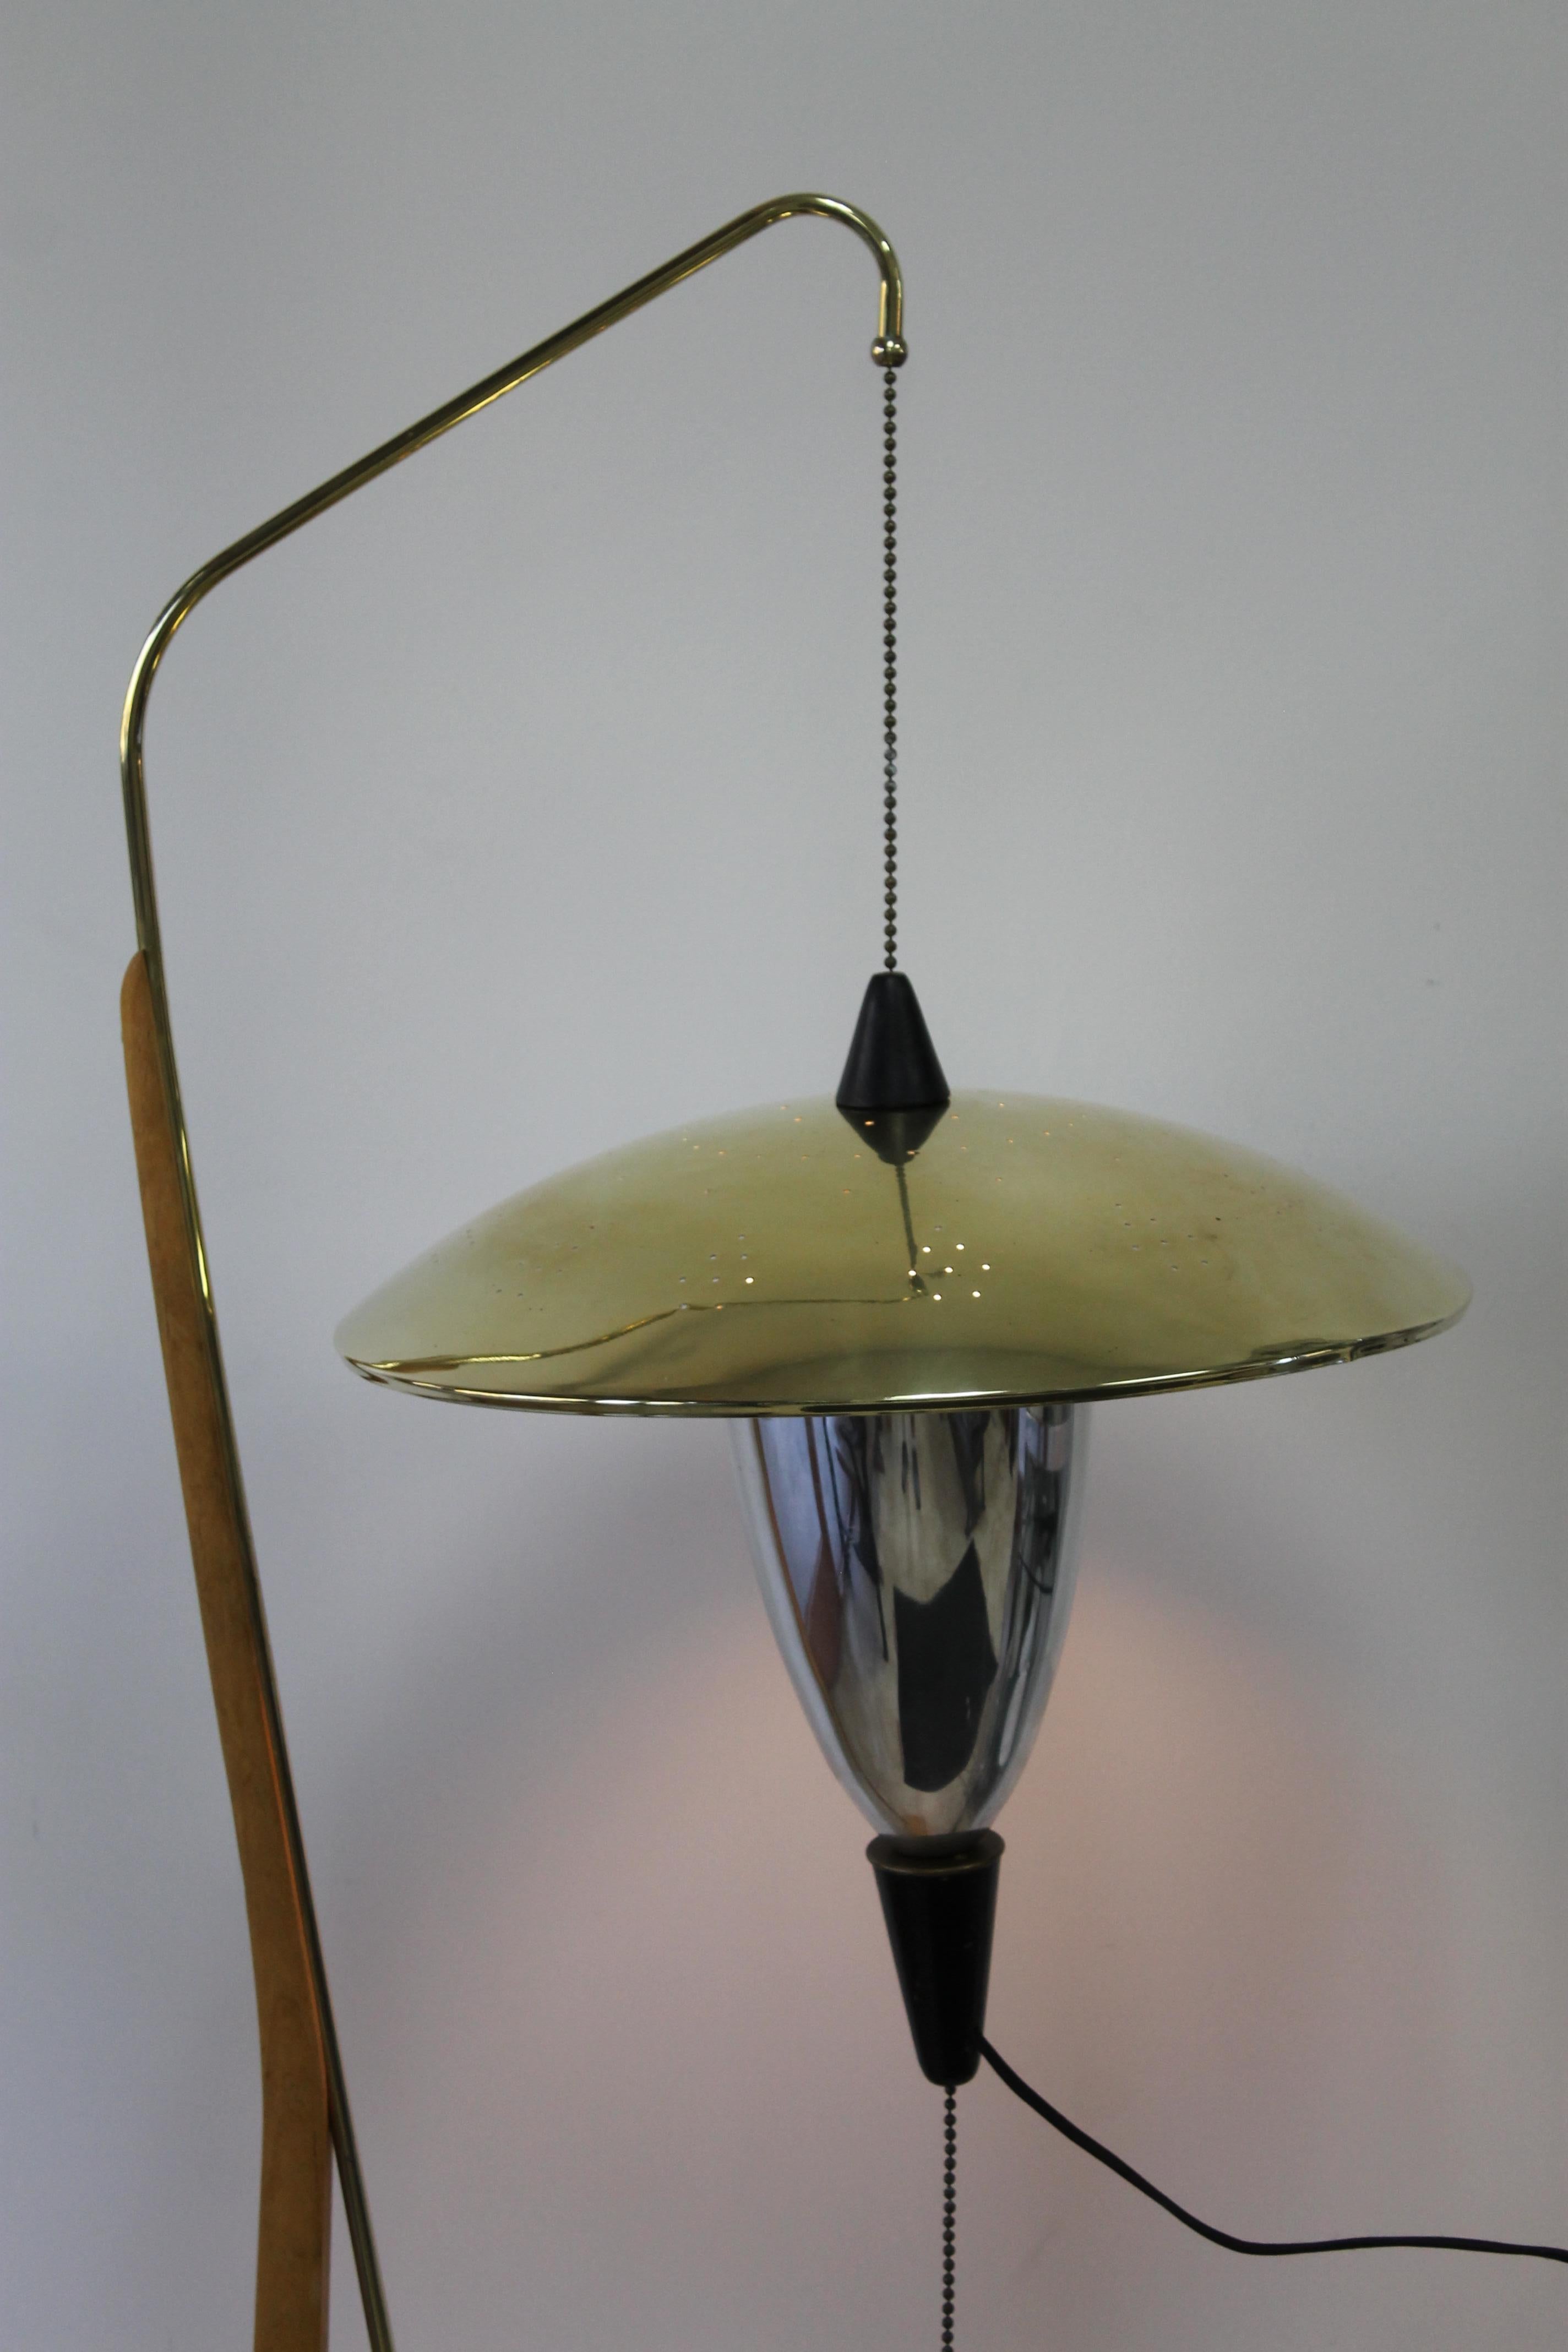 American Arthur F. Jacobs Adjustable Floor Lamp